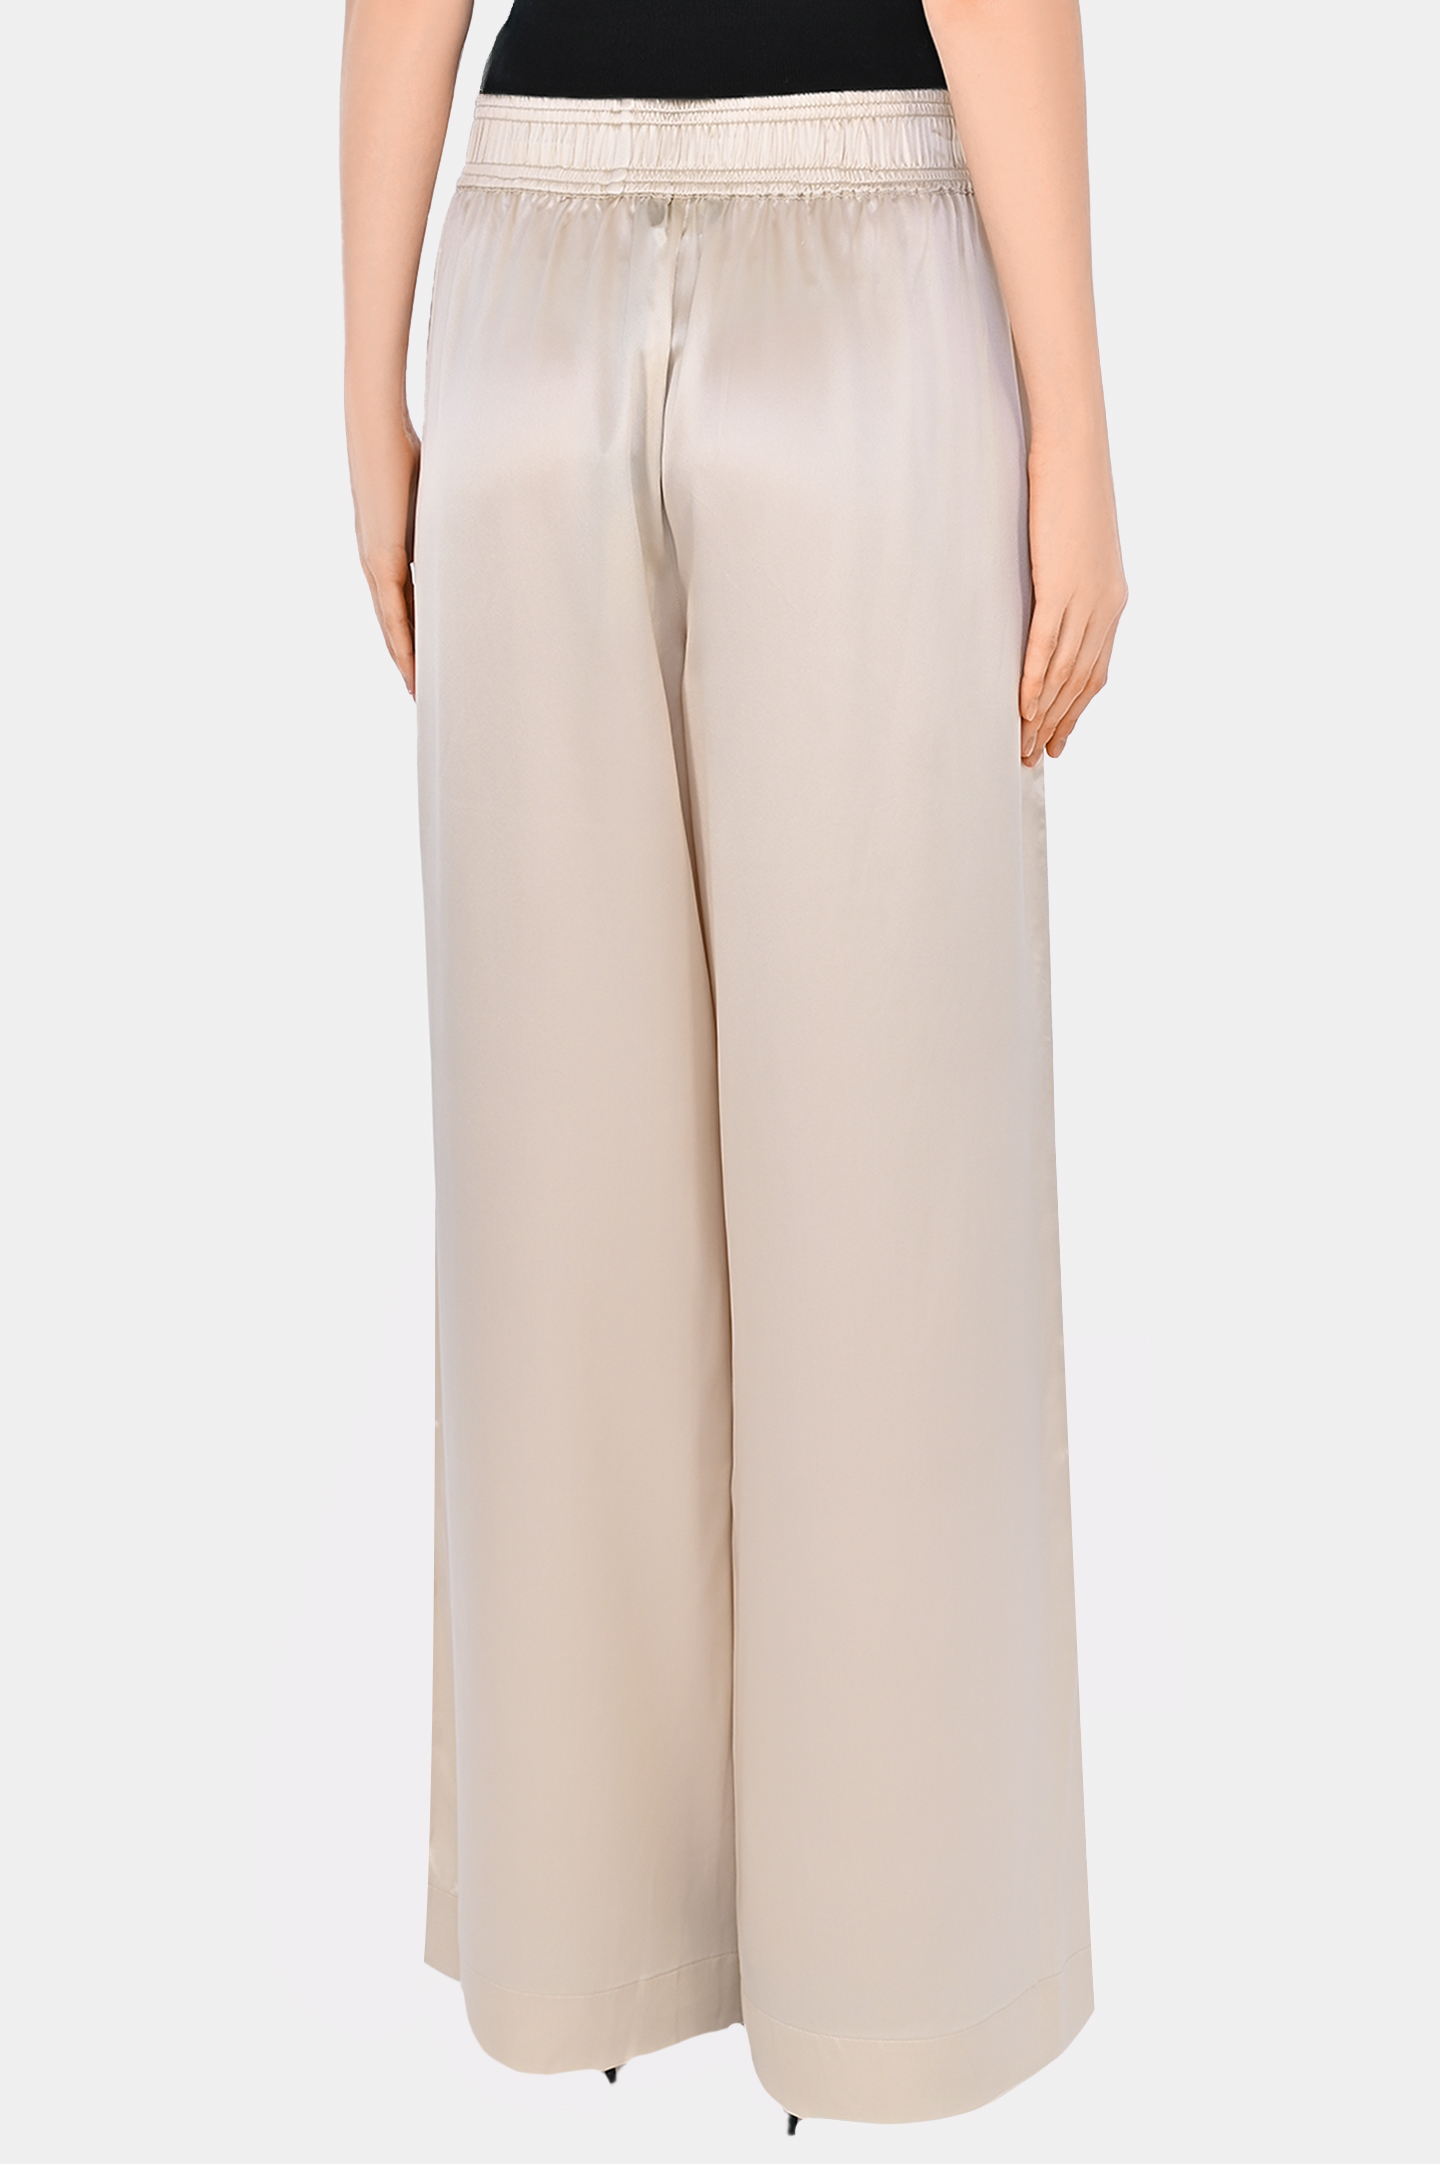 Широкие брюк из шелка JACOB LEE WSP008SS24PW, цвет: Светло-бежевый, Женский